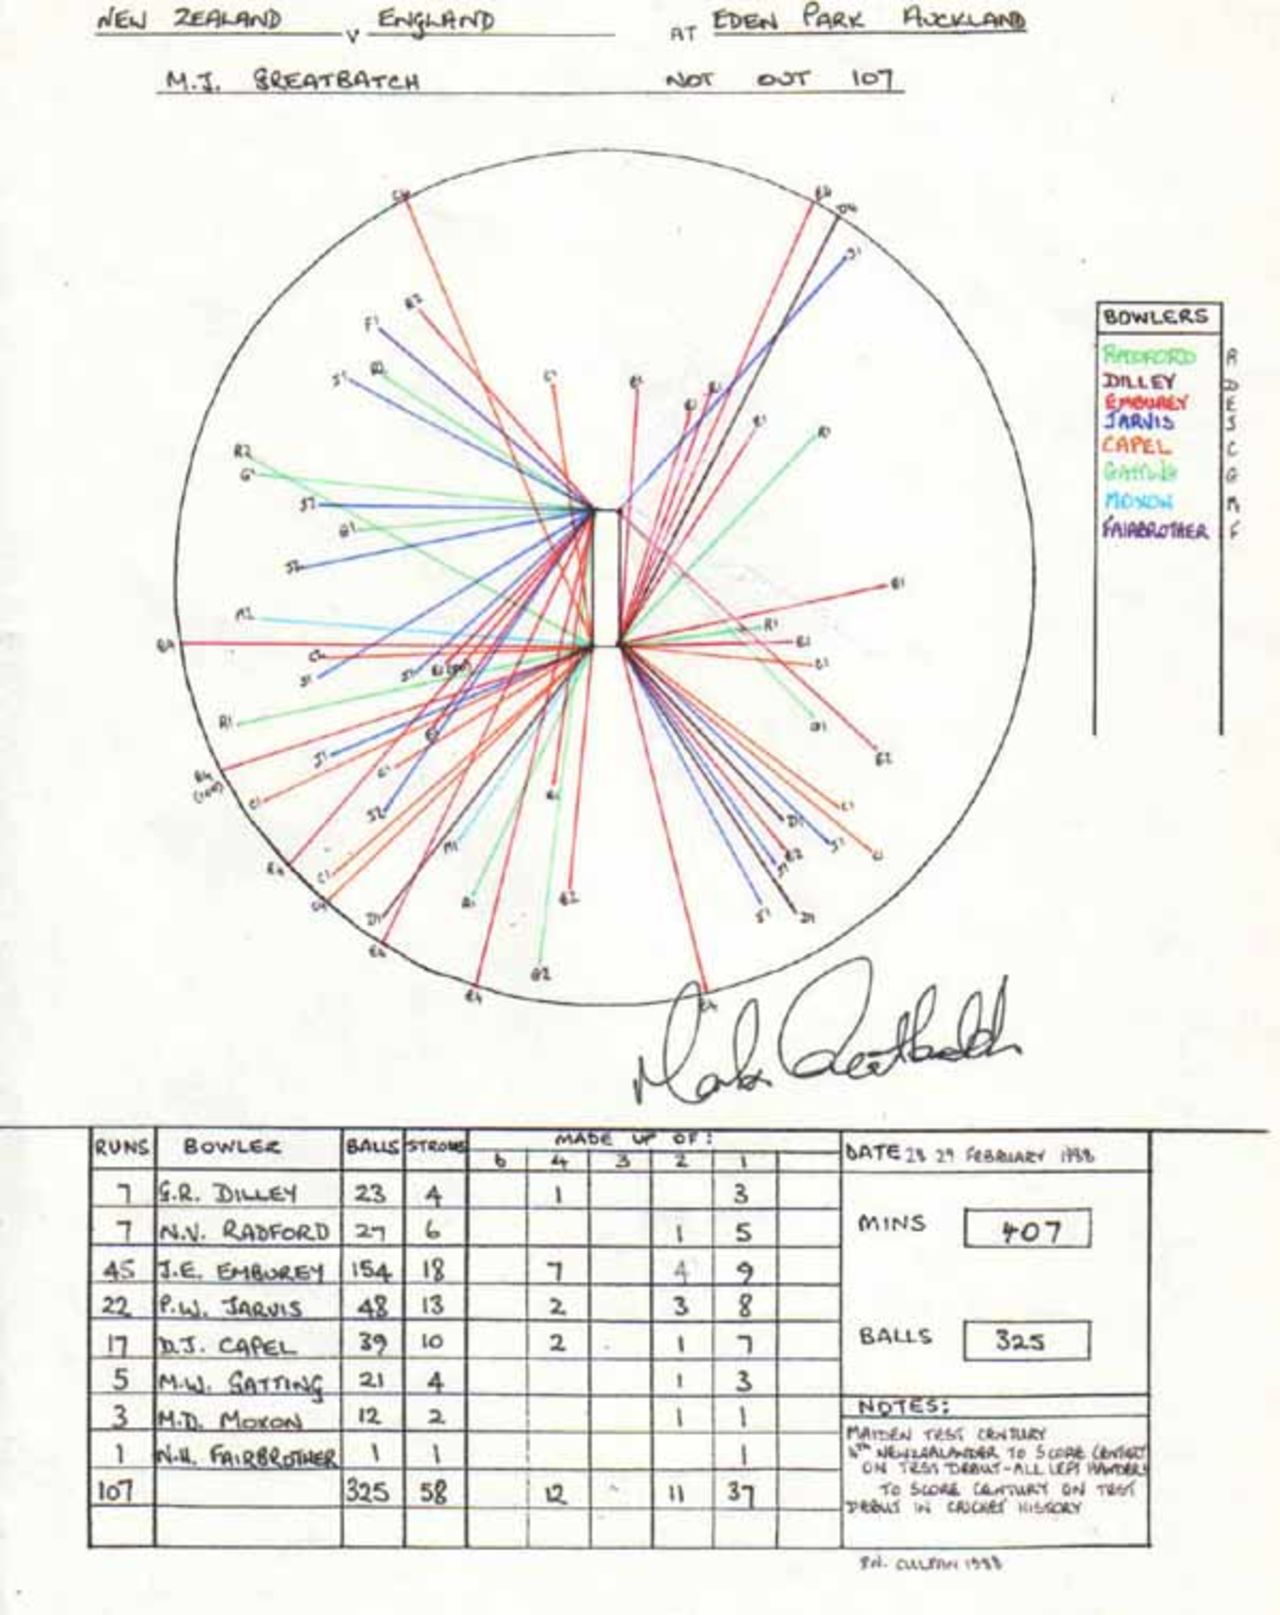 Wagon Wheel of Mark Greatbatch's 107 v England, Eden Park, Auckland 28-29 February 1988